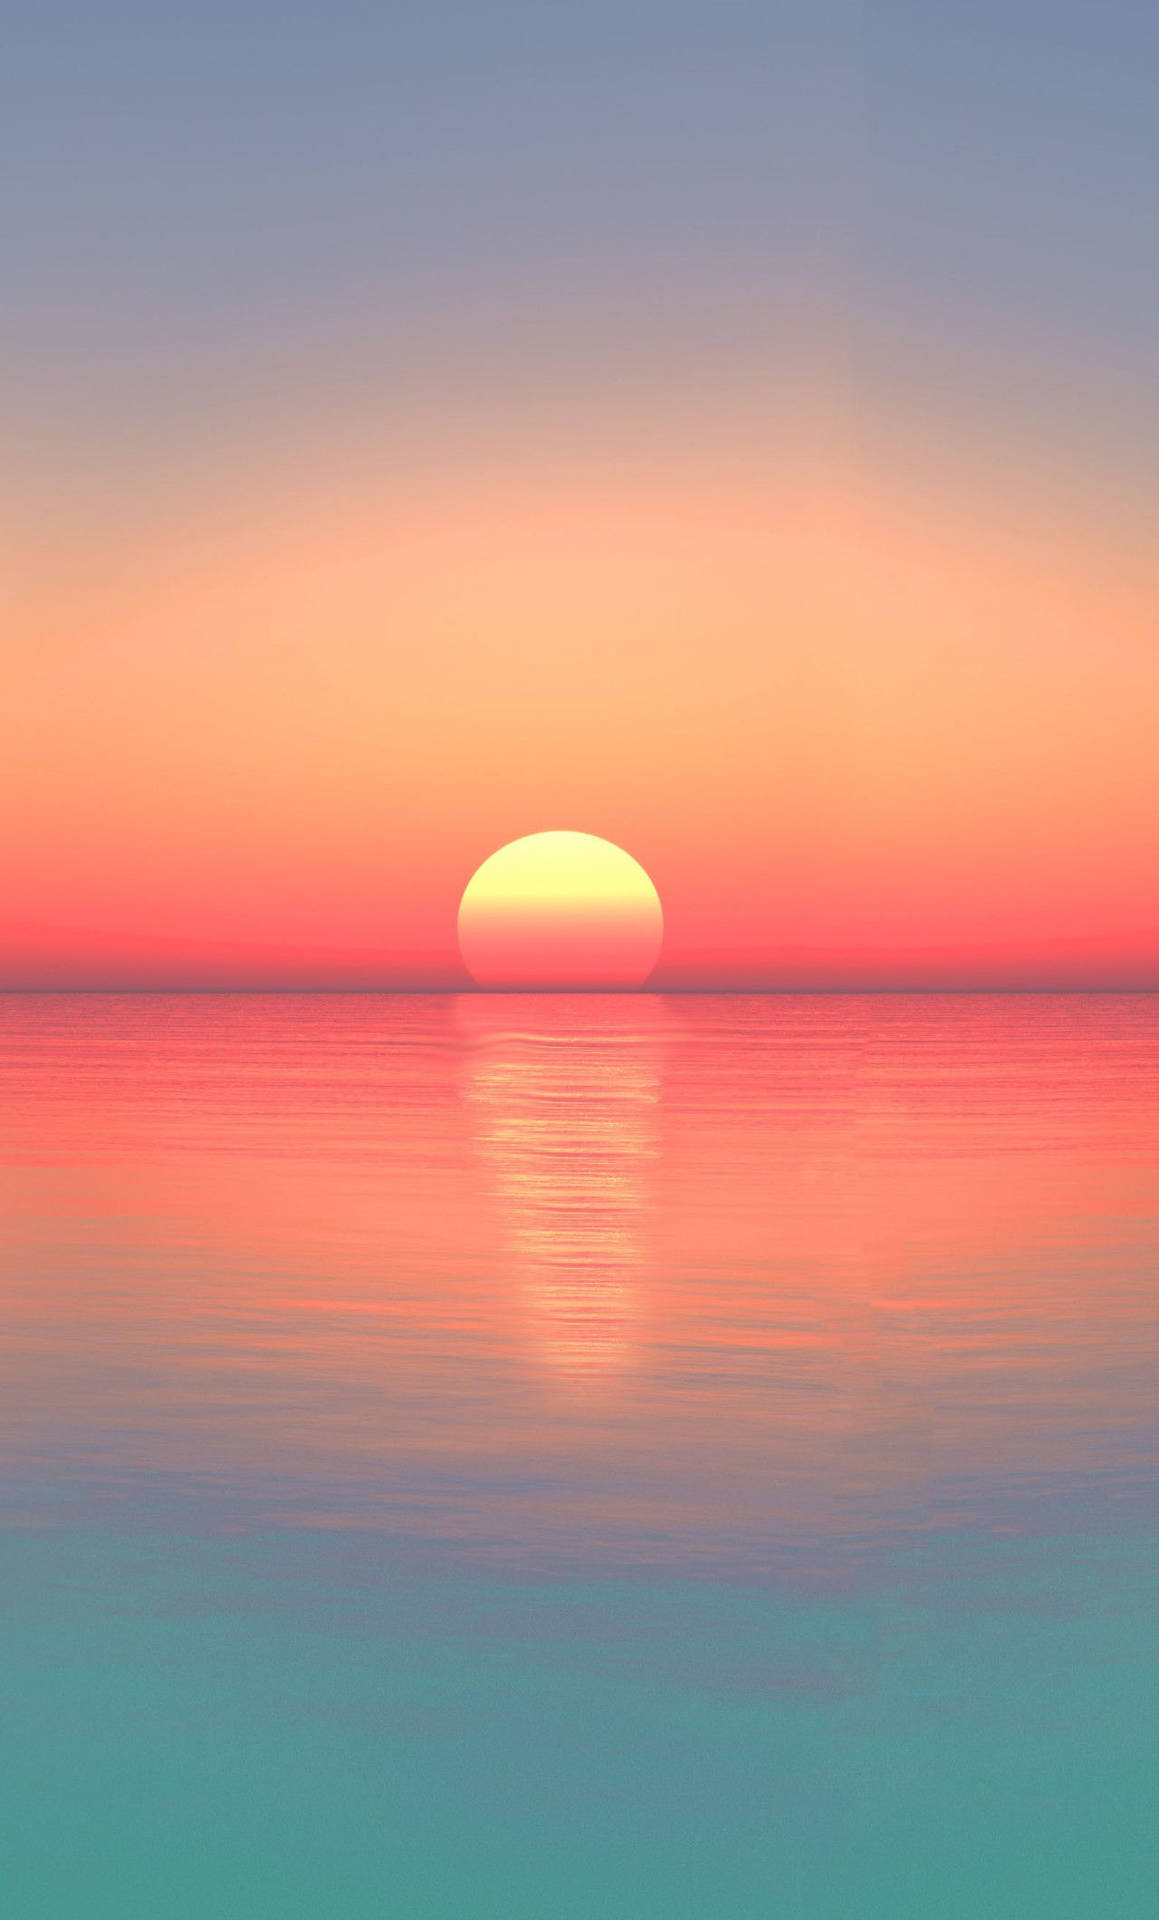 Sunset Ocean 1280 X 2120 Wallpaper